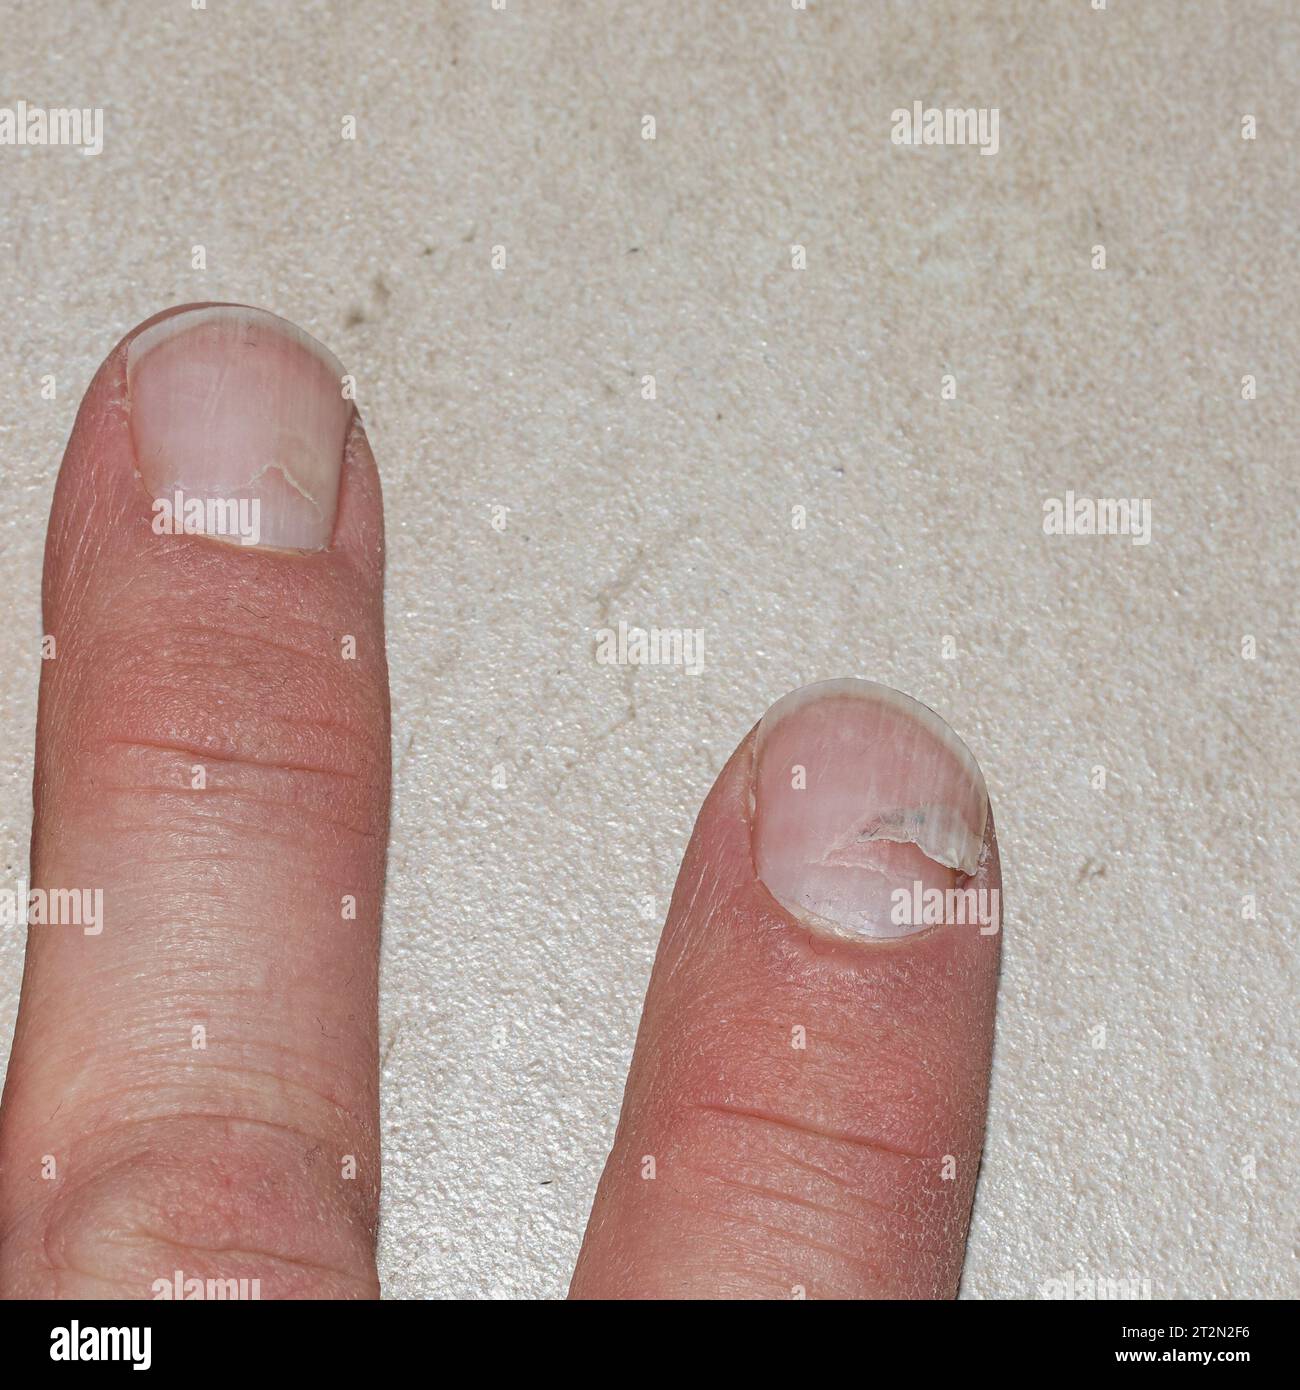 Une main affectée par la scarlatine, révélant la résilience des ongles lorsqu'ils guérissent de la maladie Banque D'Images